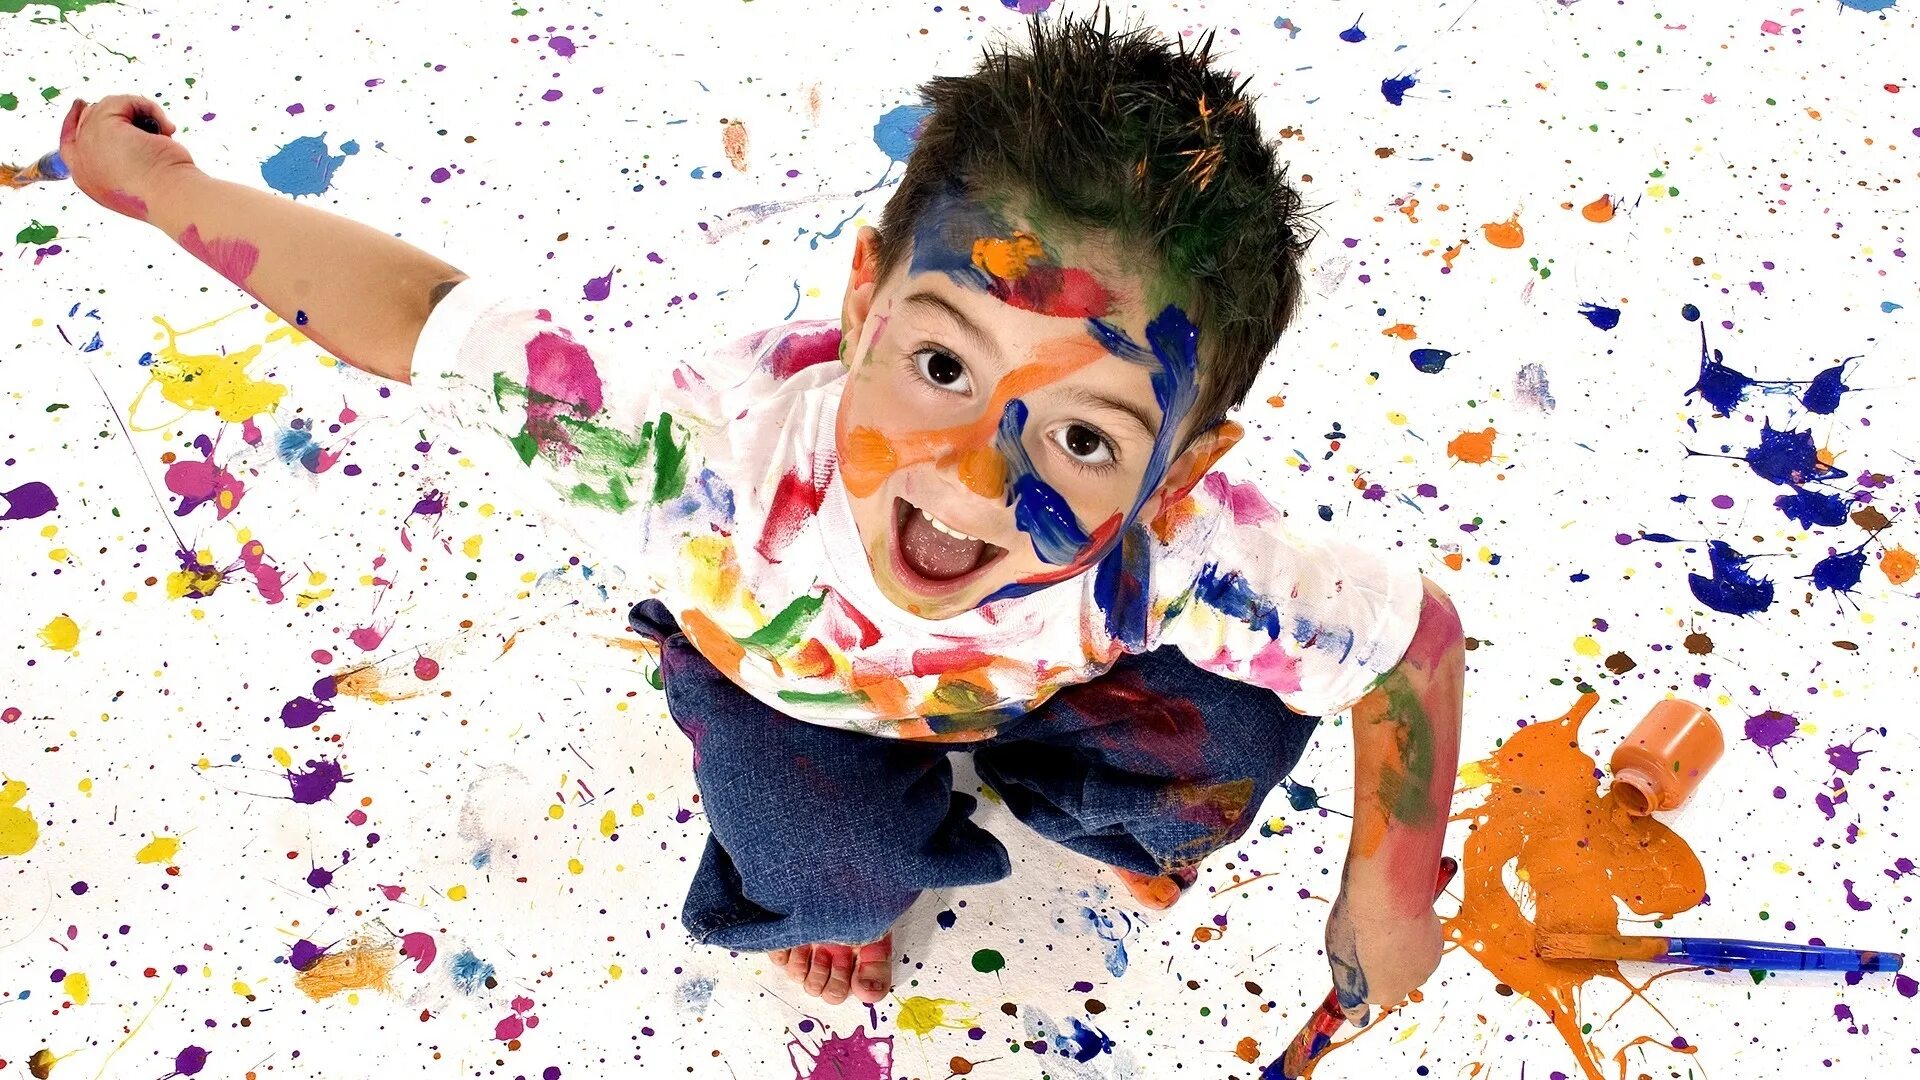 Children's painting. Креативное рисование для детей. Краски для детей. Человек в краске. Мальчик с красками.